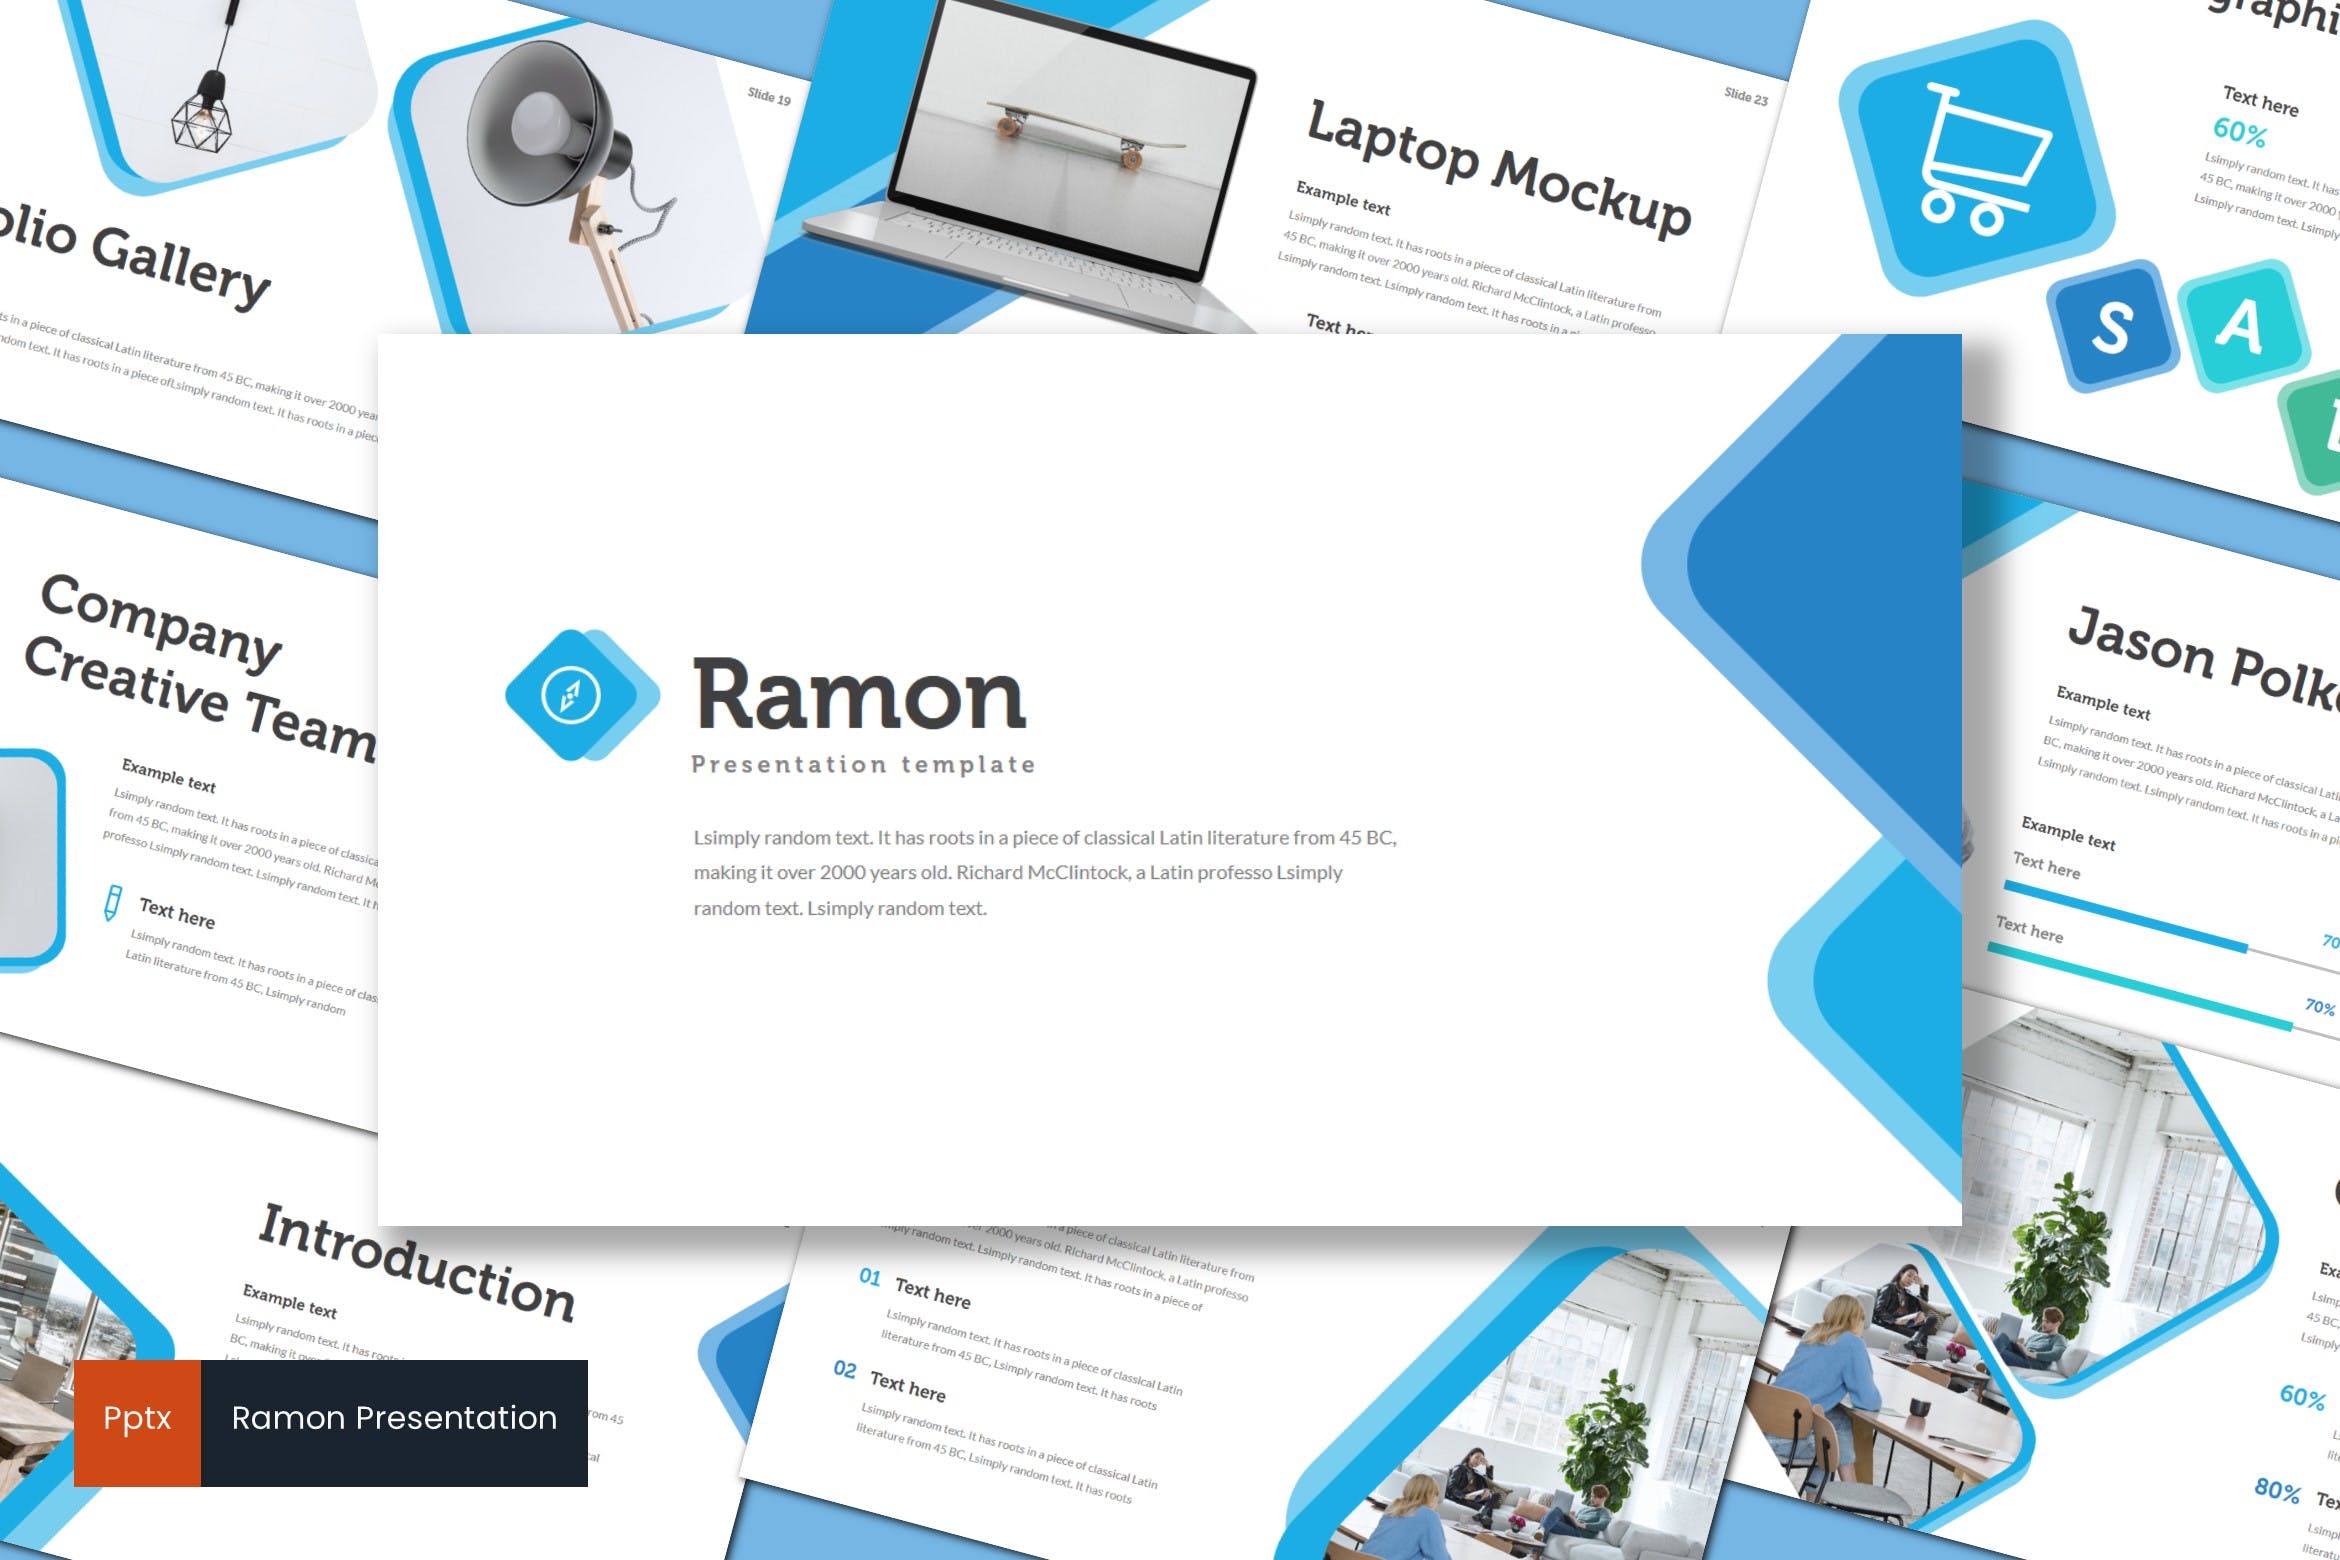 室内设计品牌宣传16图库精选PPT模板 Ramon – Powerpoint Template插图